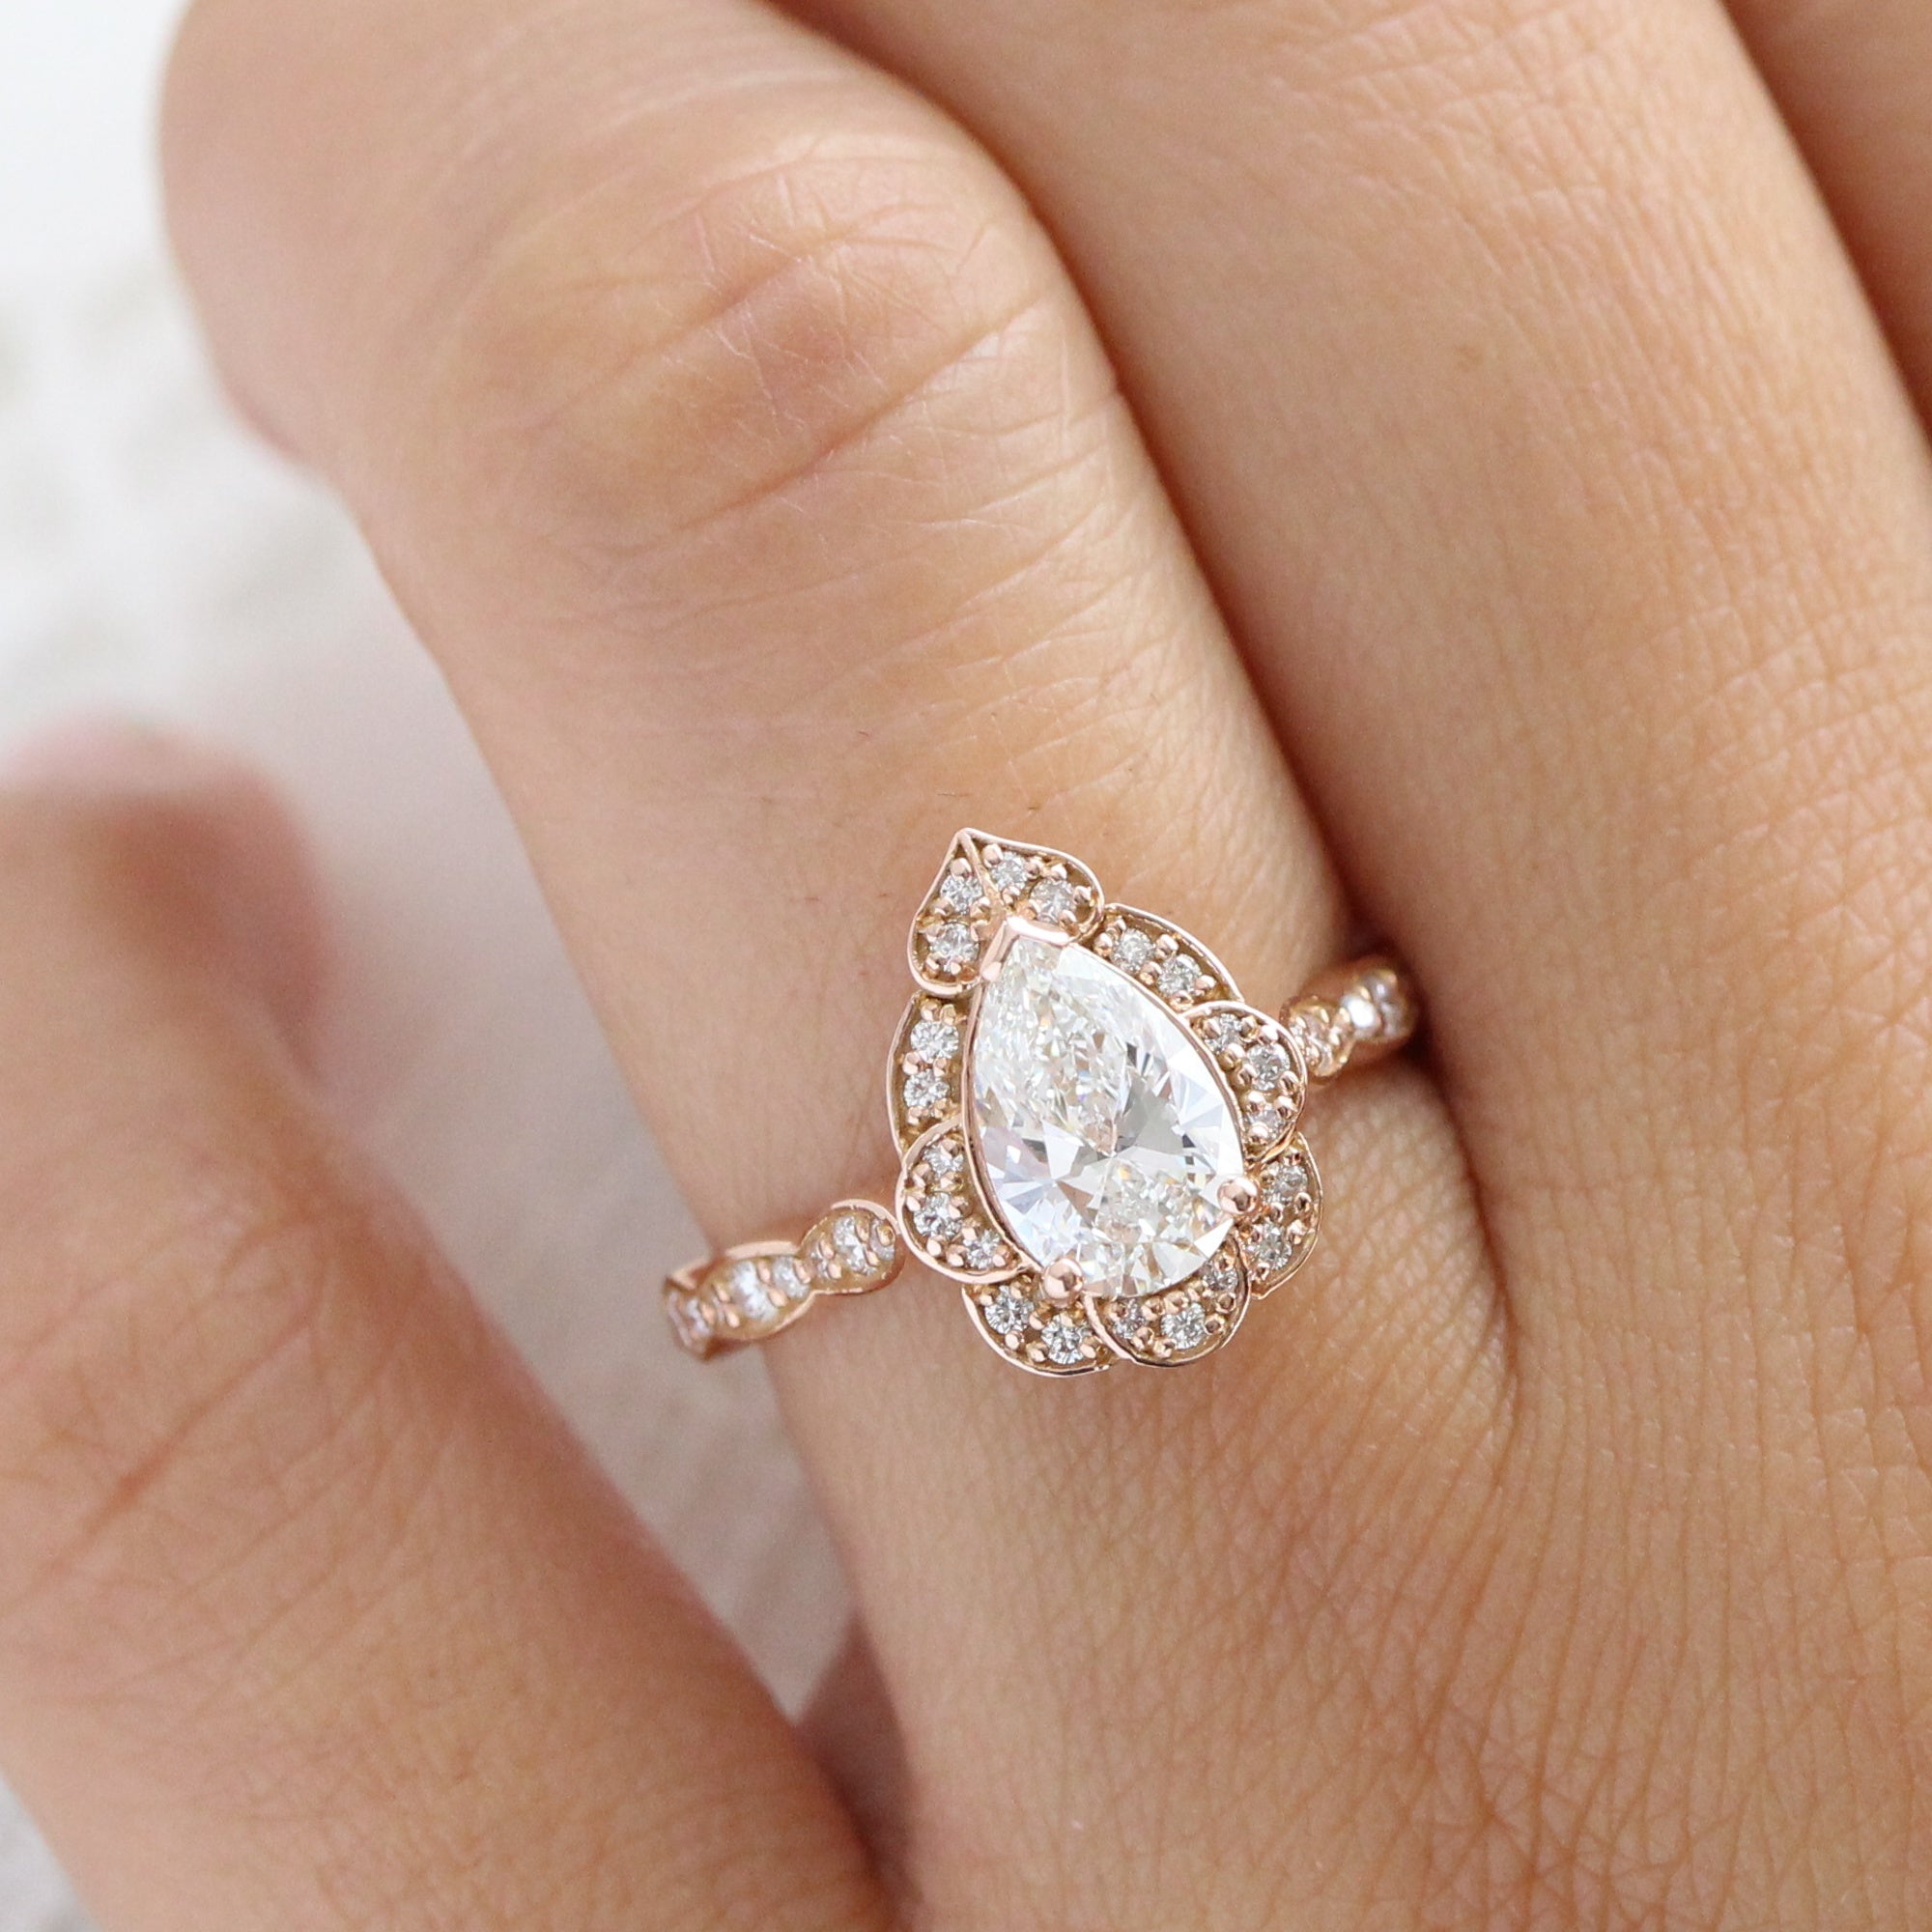 Shop Unique Engagement Rings Collection